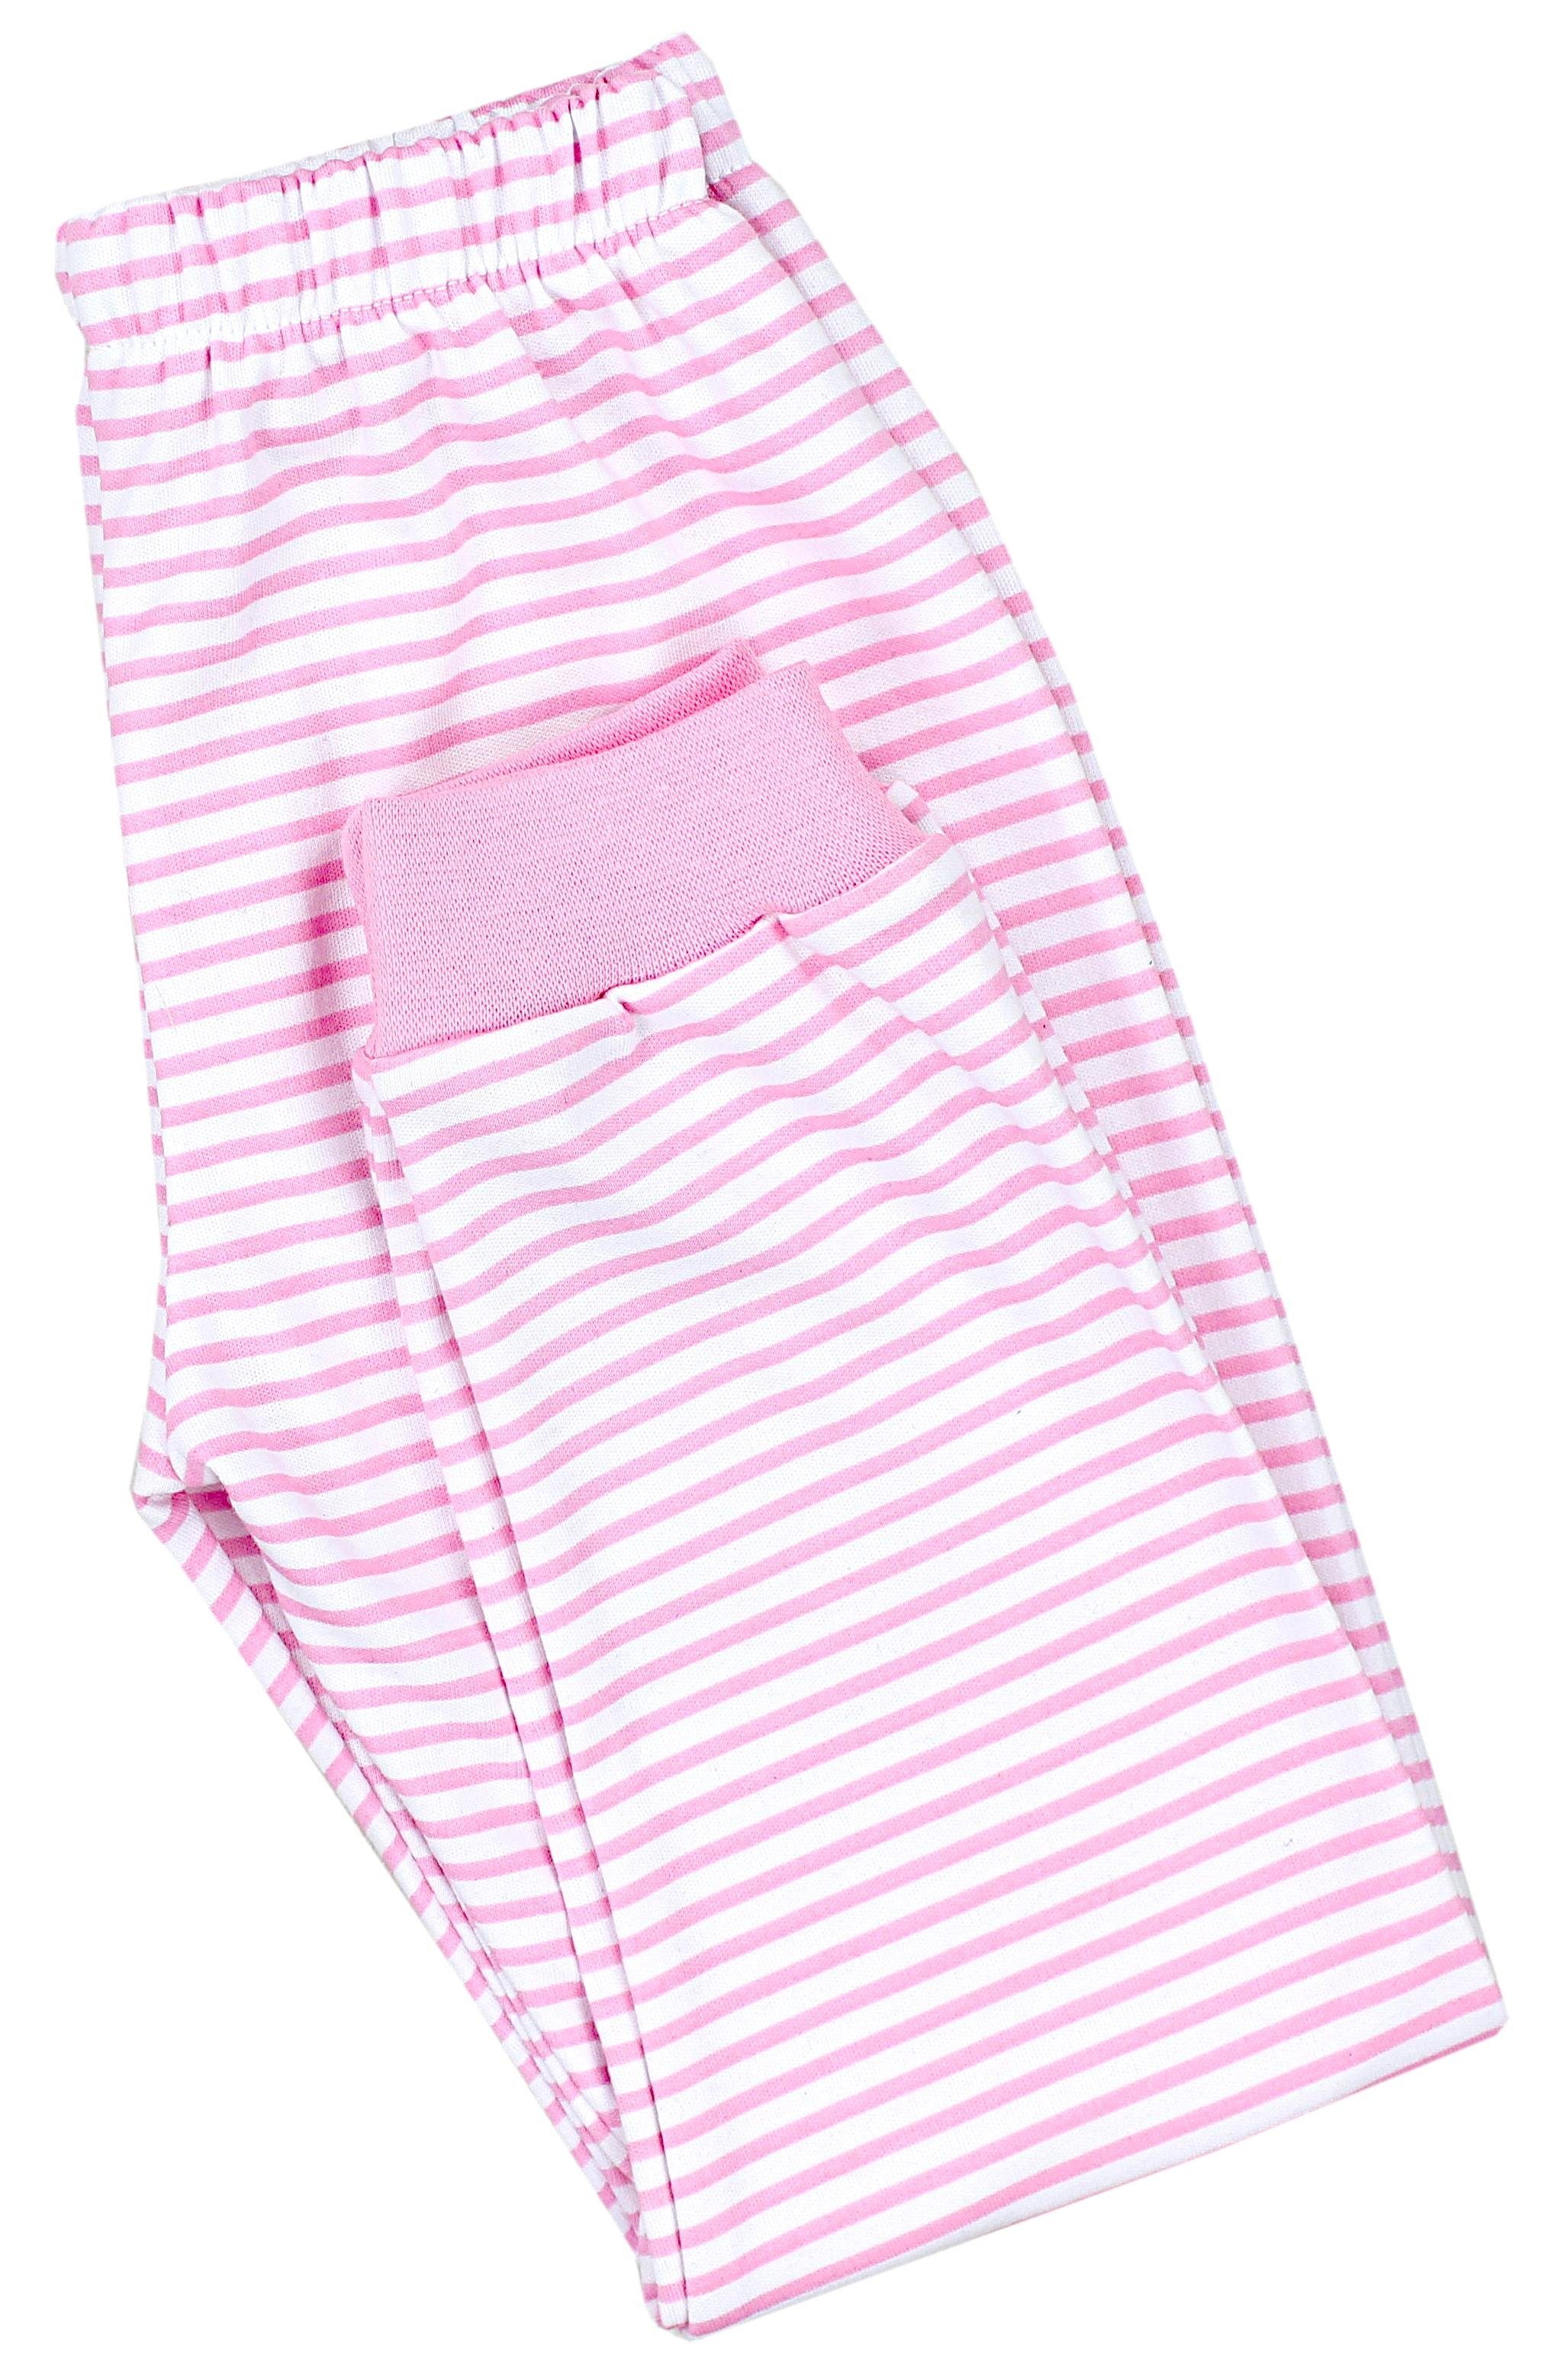 / Rosa HAPPY Kinder Nachtwäsche CHOOSE Schlafanzug 2-teilig Pyjama TupTam Set Schlafanzug Mädchen Streifen Langarm